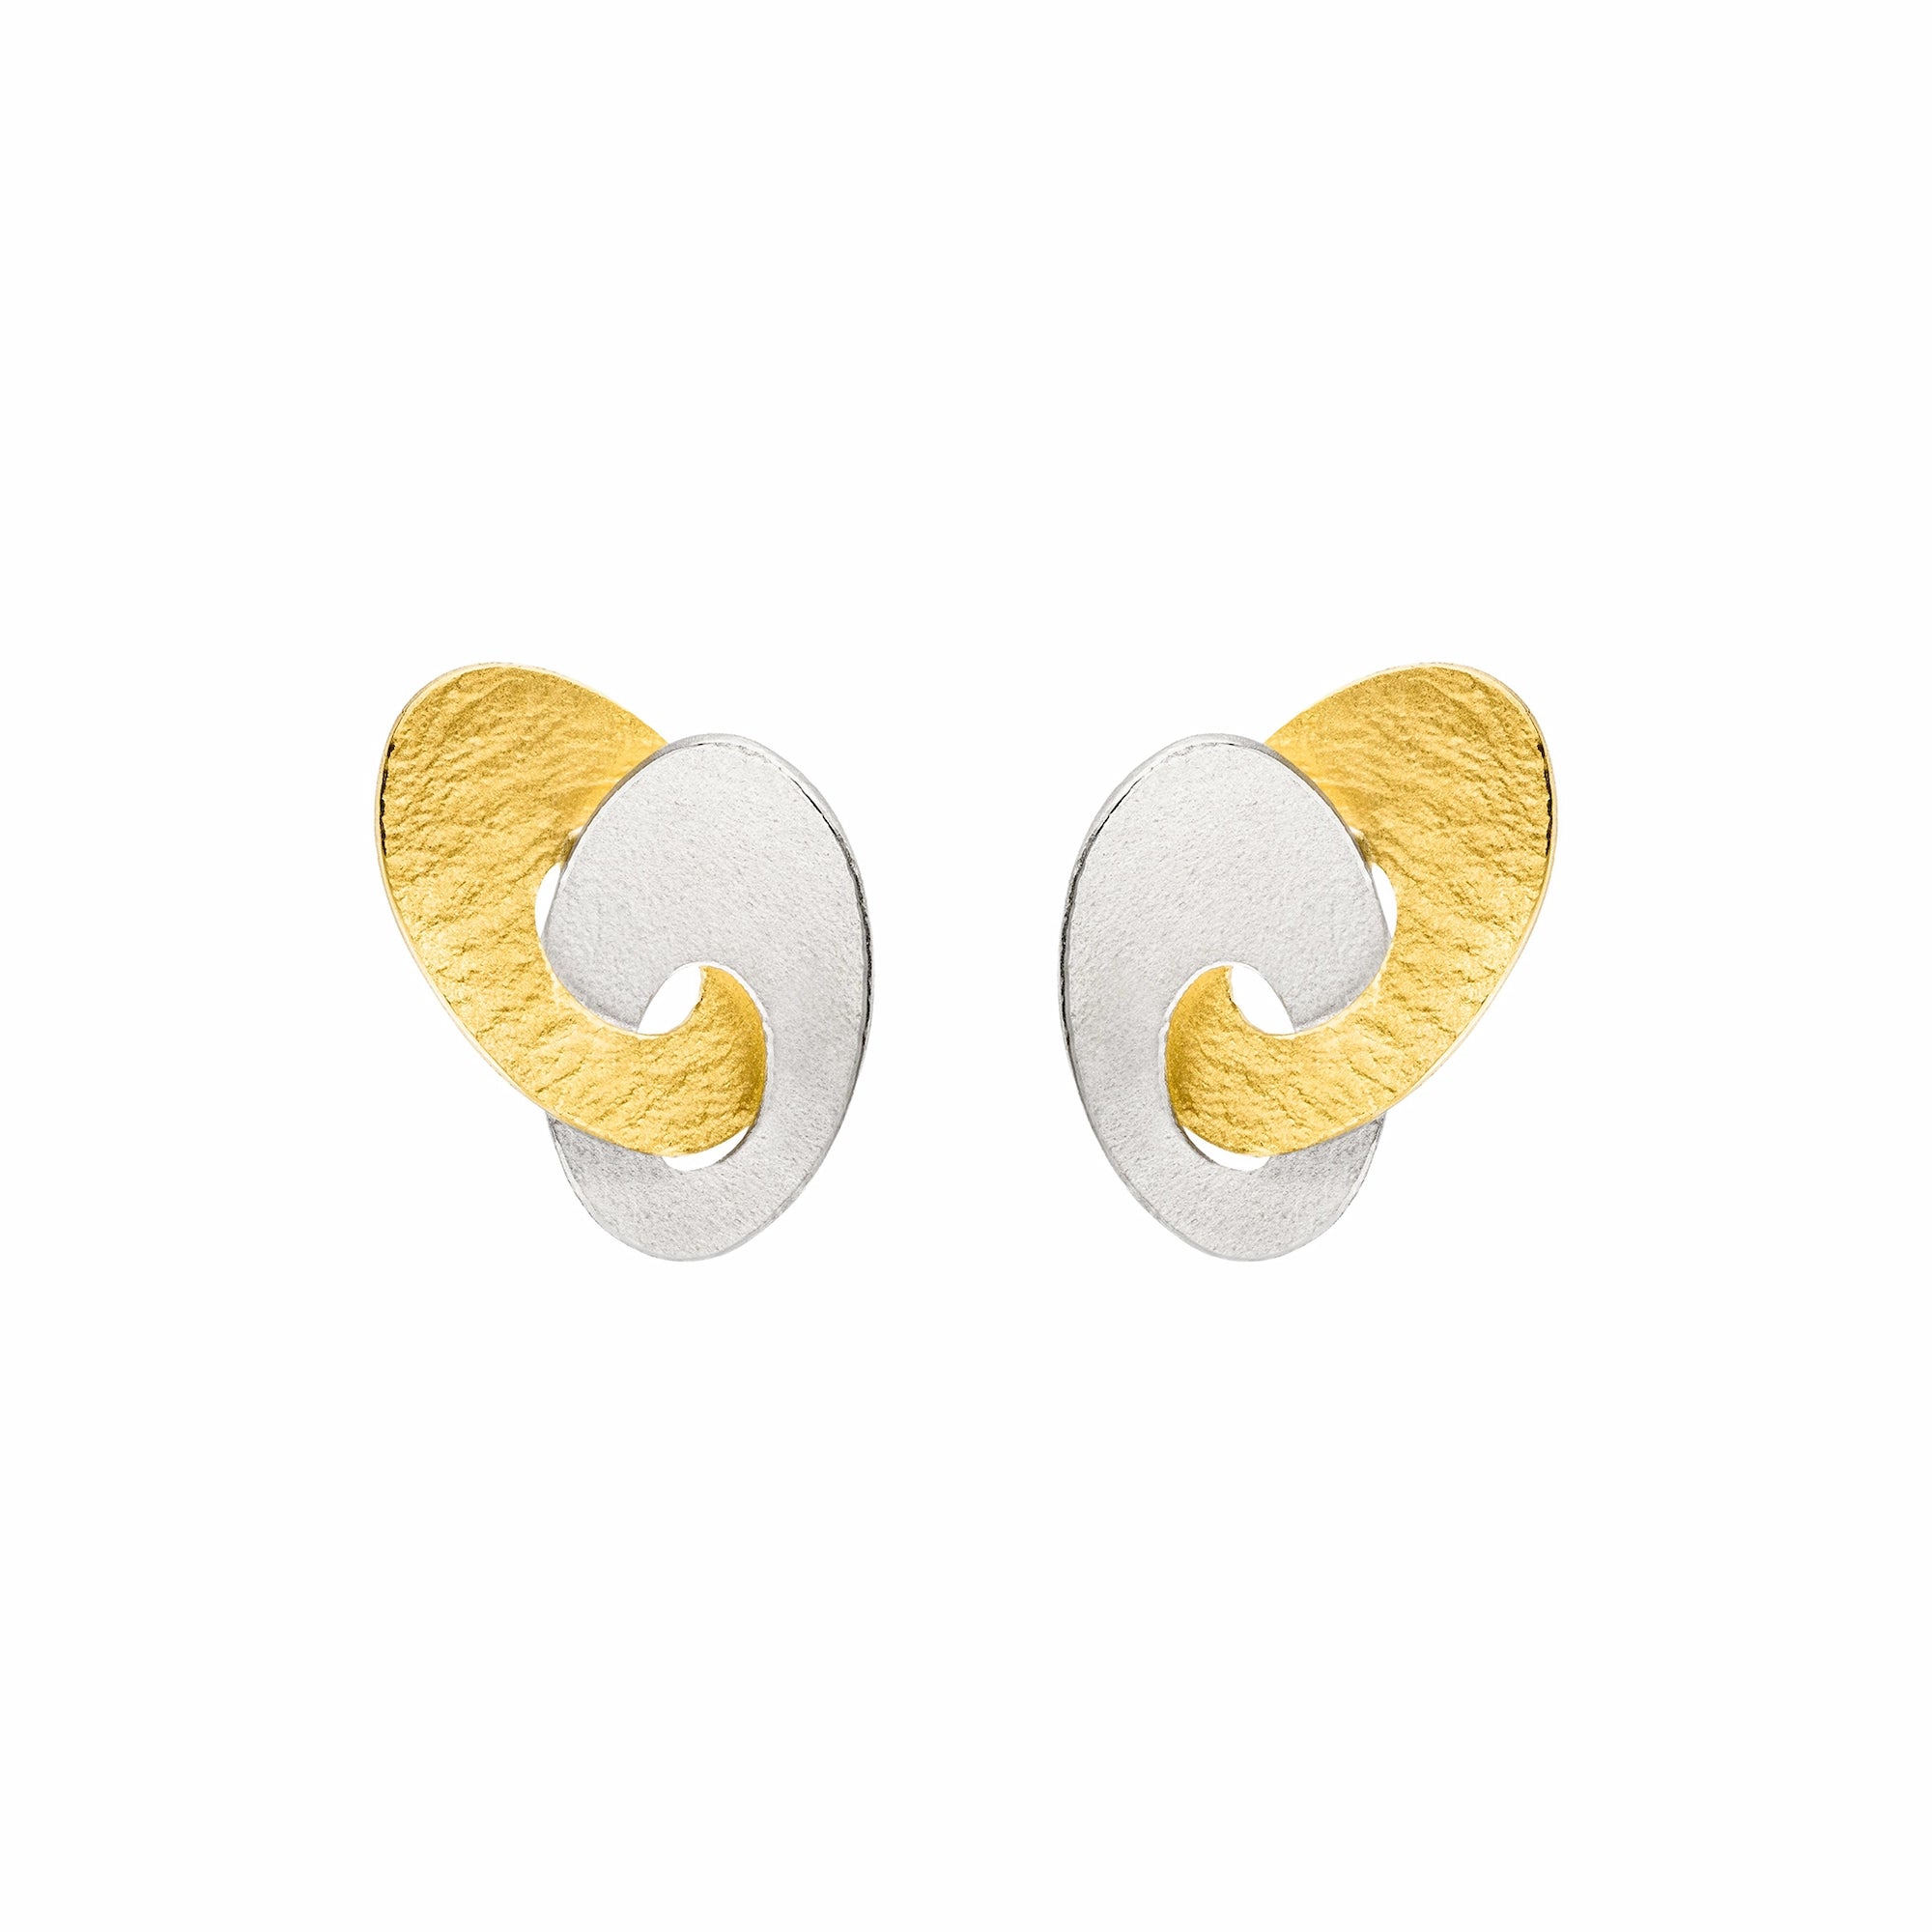 Ohrstceker von Manu Schmuck mit jeweils einem ovalen Ring in Silber und Silber mit Gelbgoldauflage, die ineinander verschlungen sind